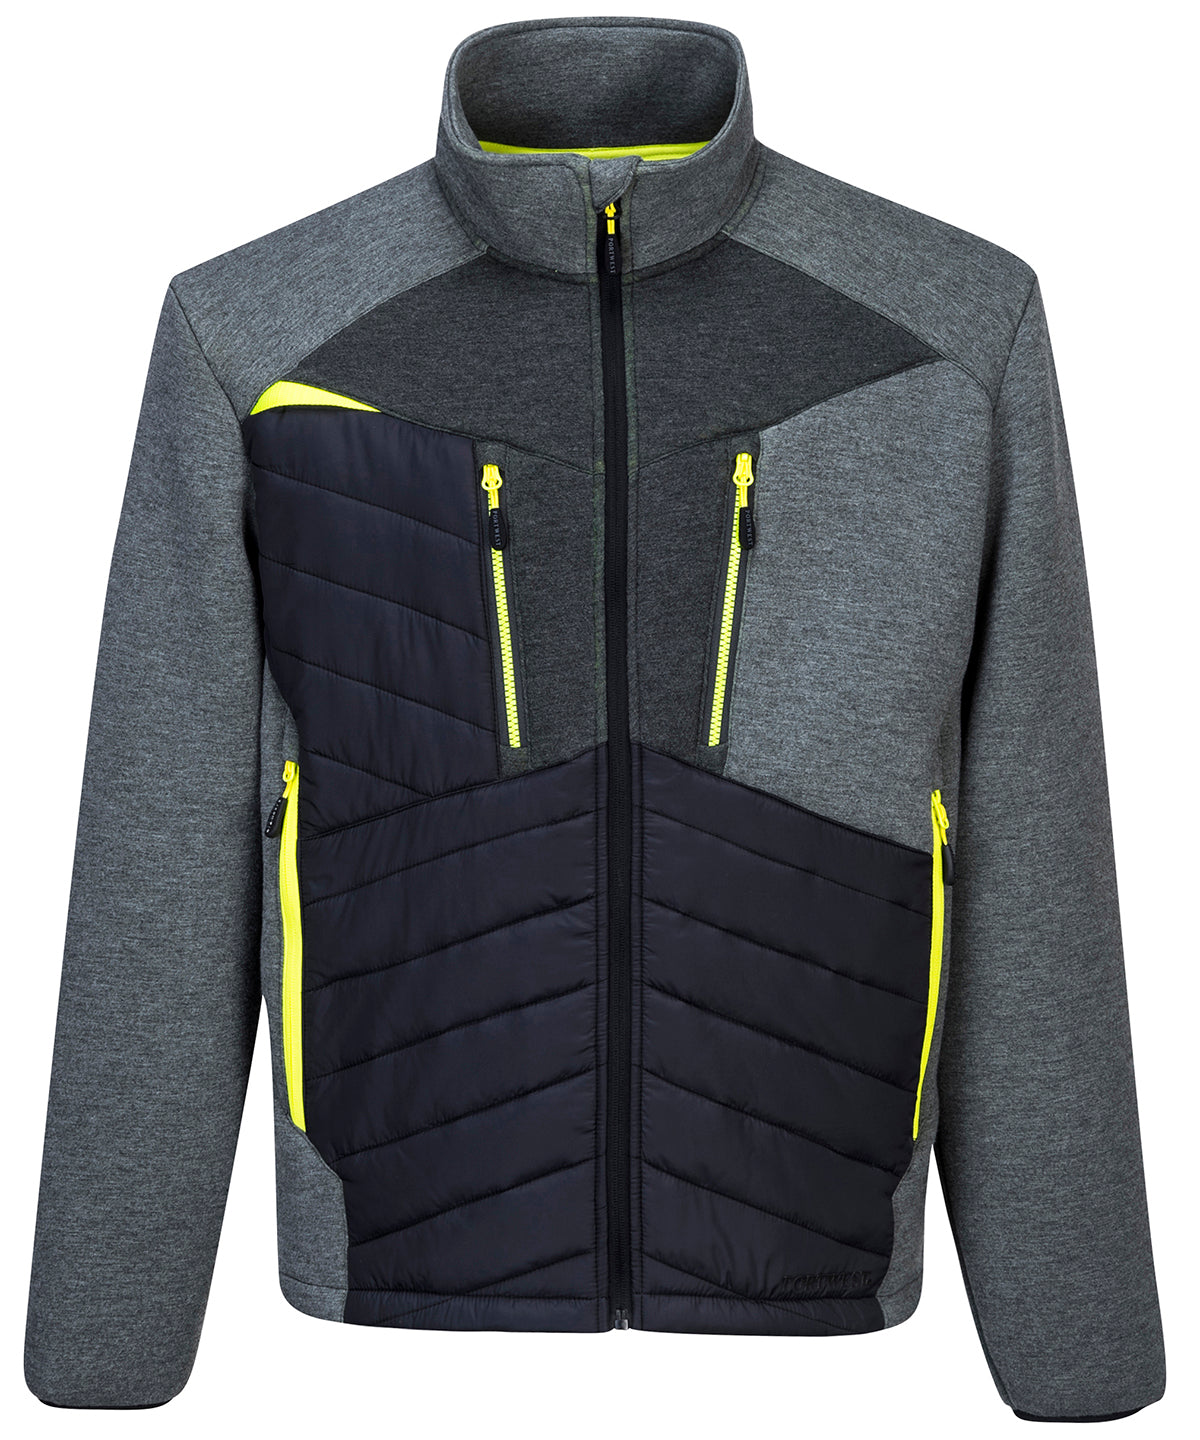 Portwest DX4 Hybrid Baffle jacket